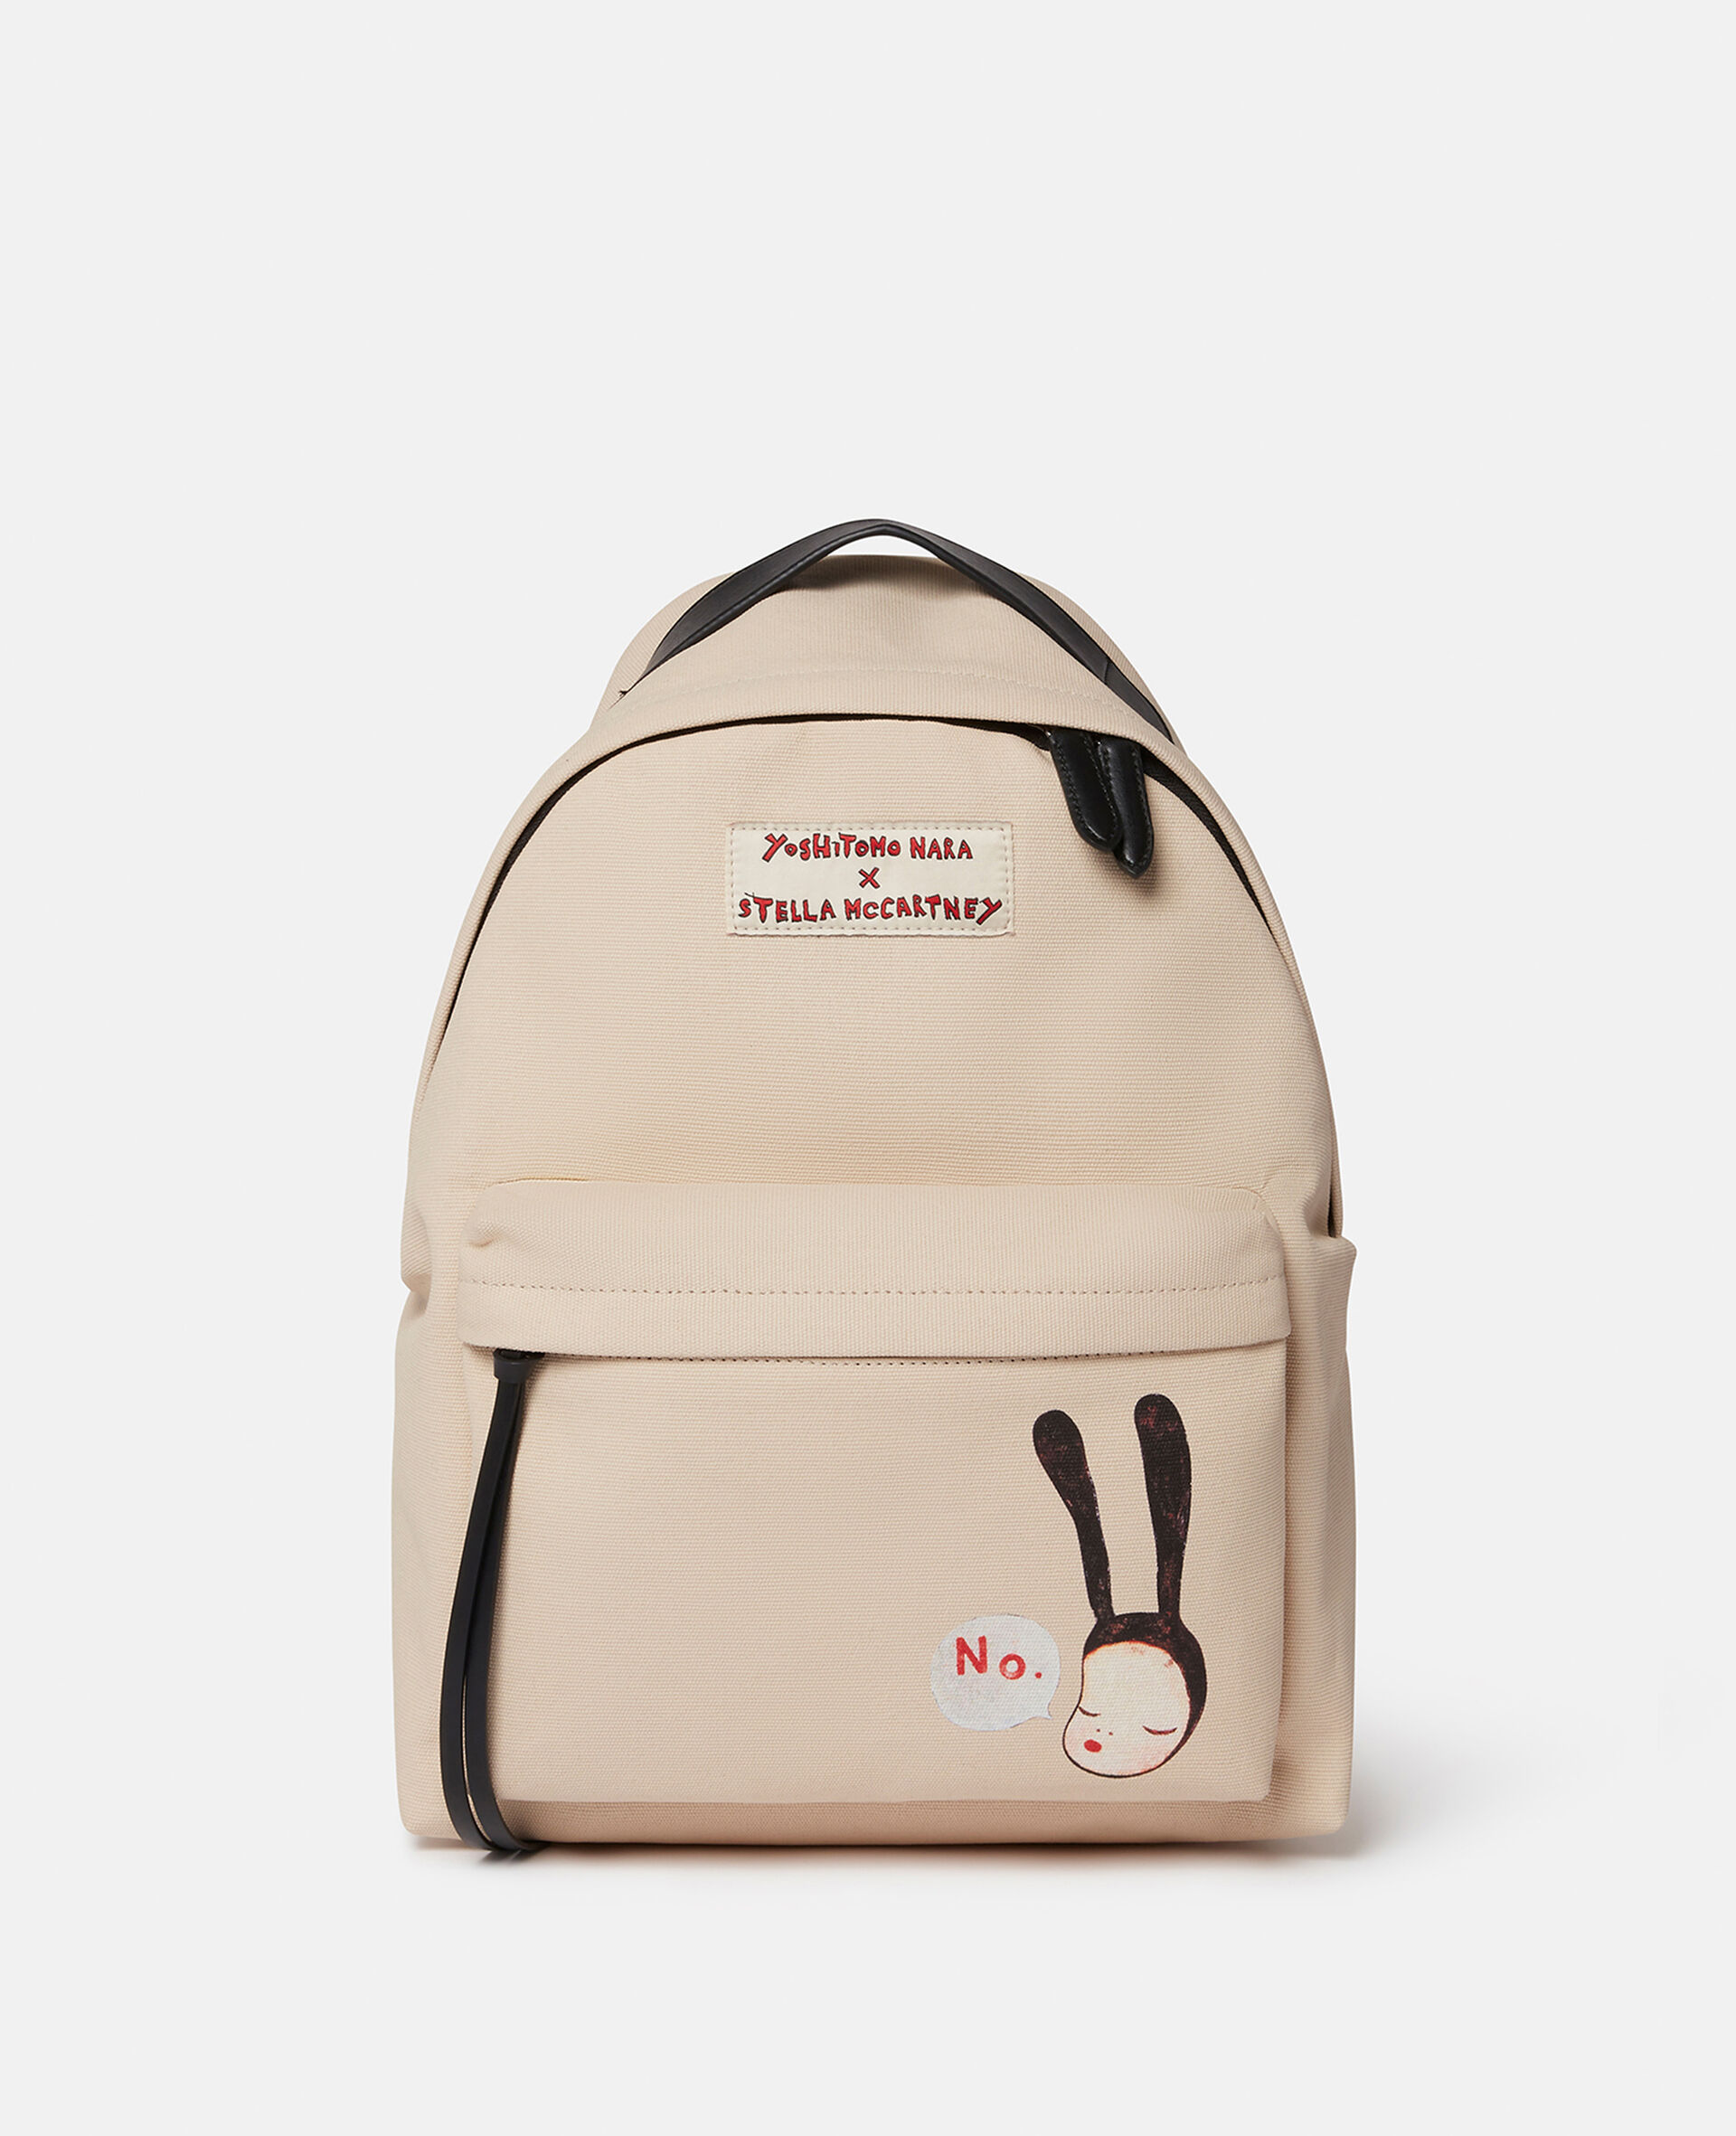 Little Black Bunny Print Backpack-Beige-large image number 0